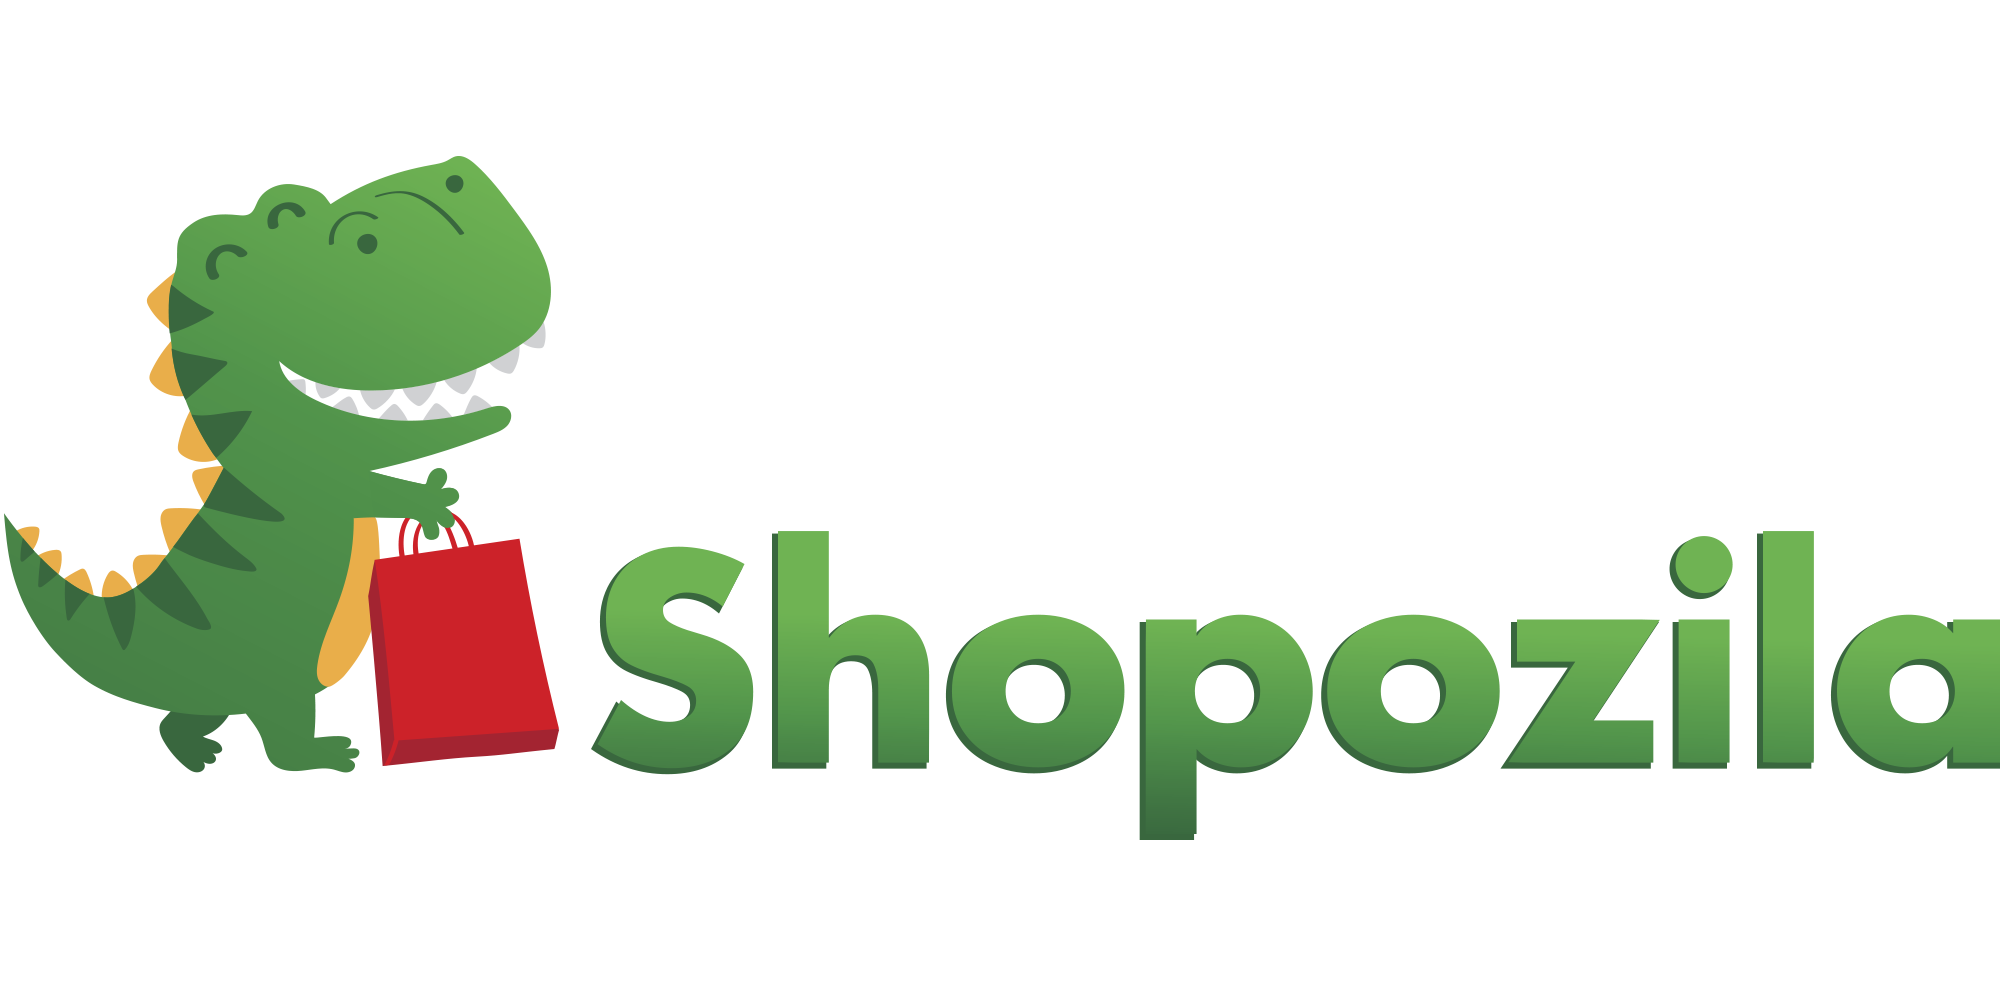 Online shop of salon equipment Shopozila.com